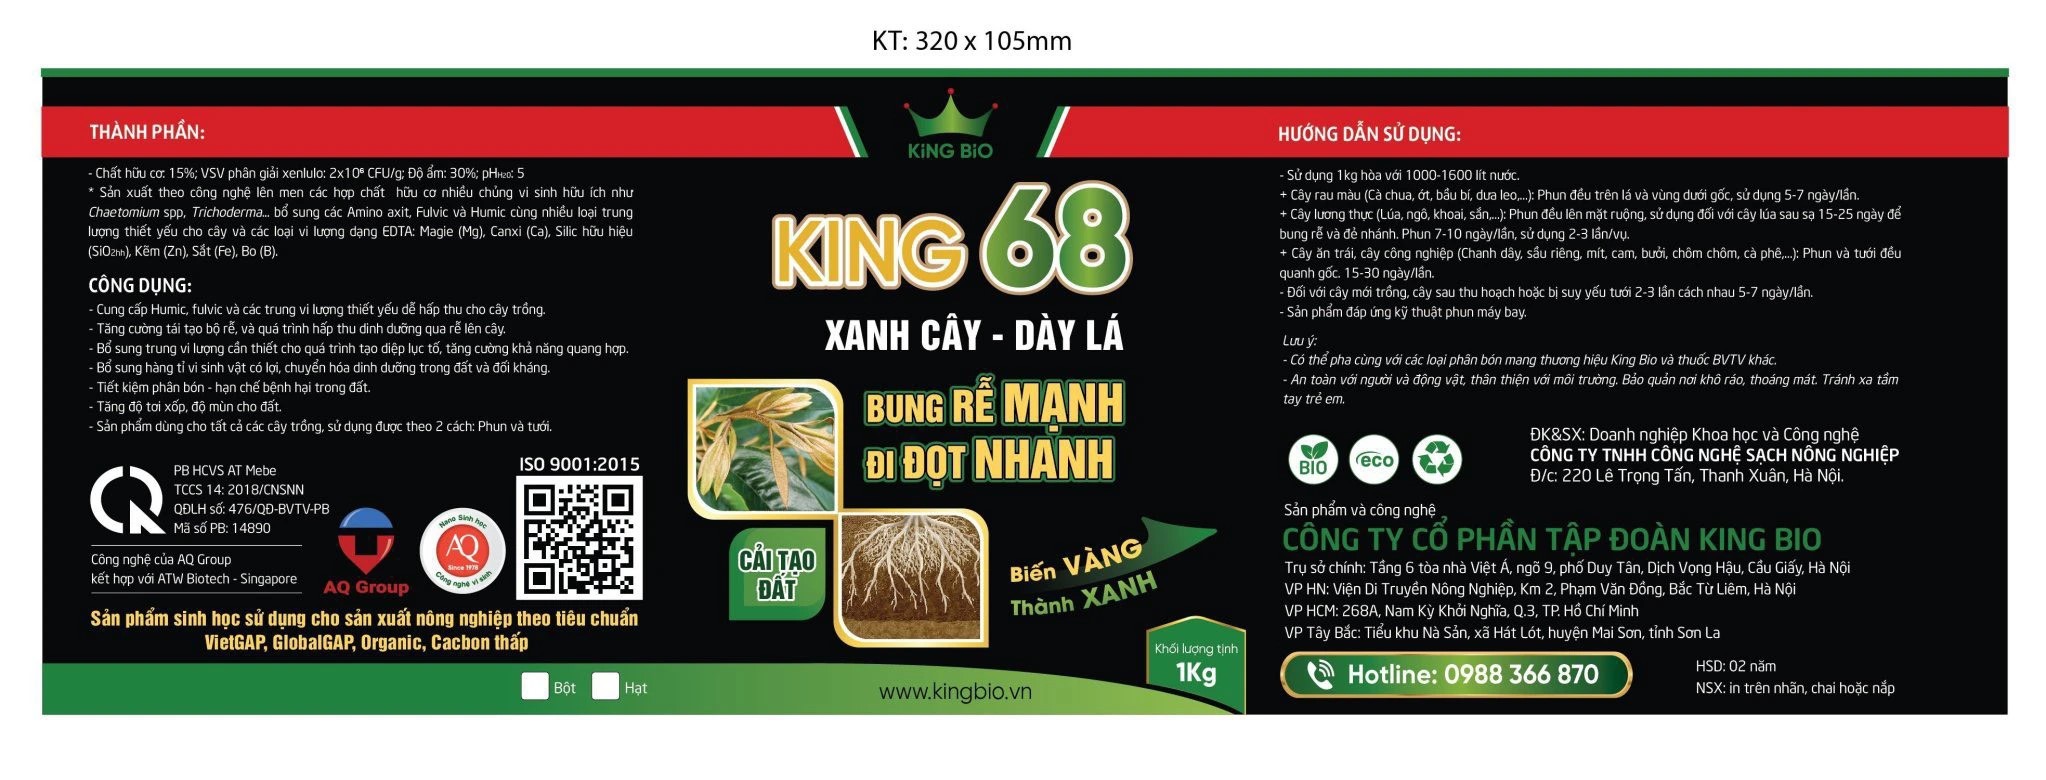 King 68 - Thuốc siêu kích rễ mạnh, ra đọt nhanh, xanh cây dầy lá, cải tạo đất, phục hồi cây bệnh, hồi sinh đất